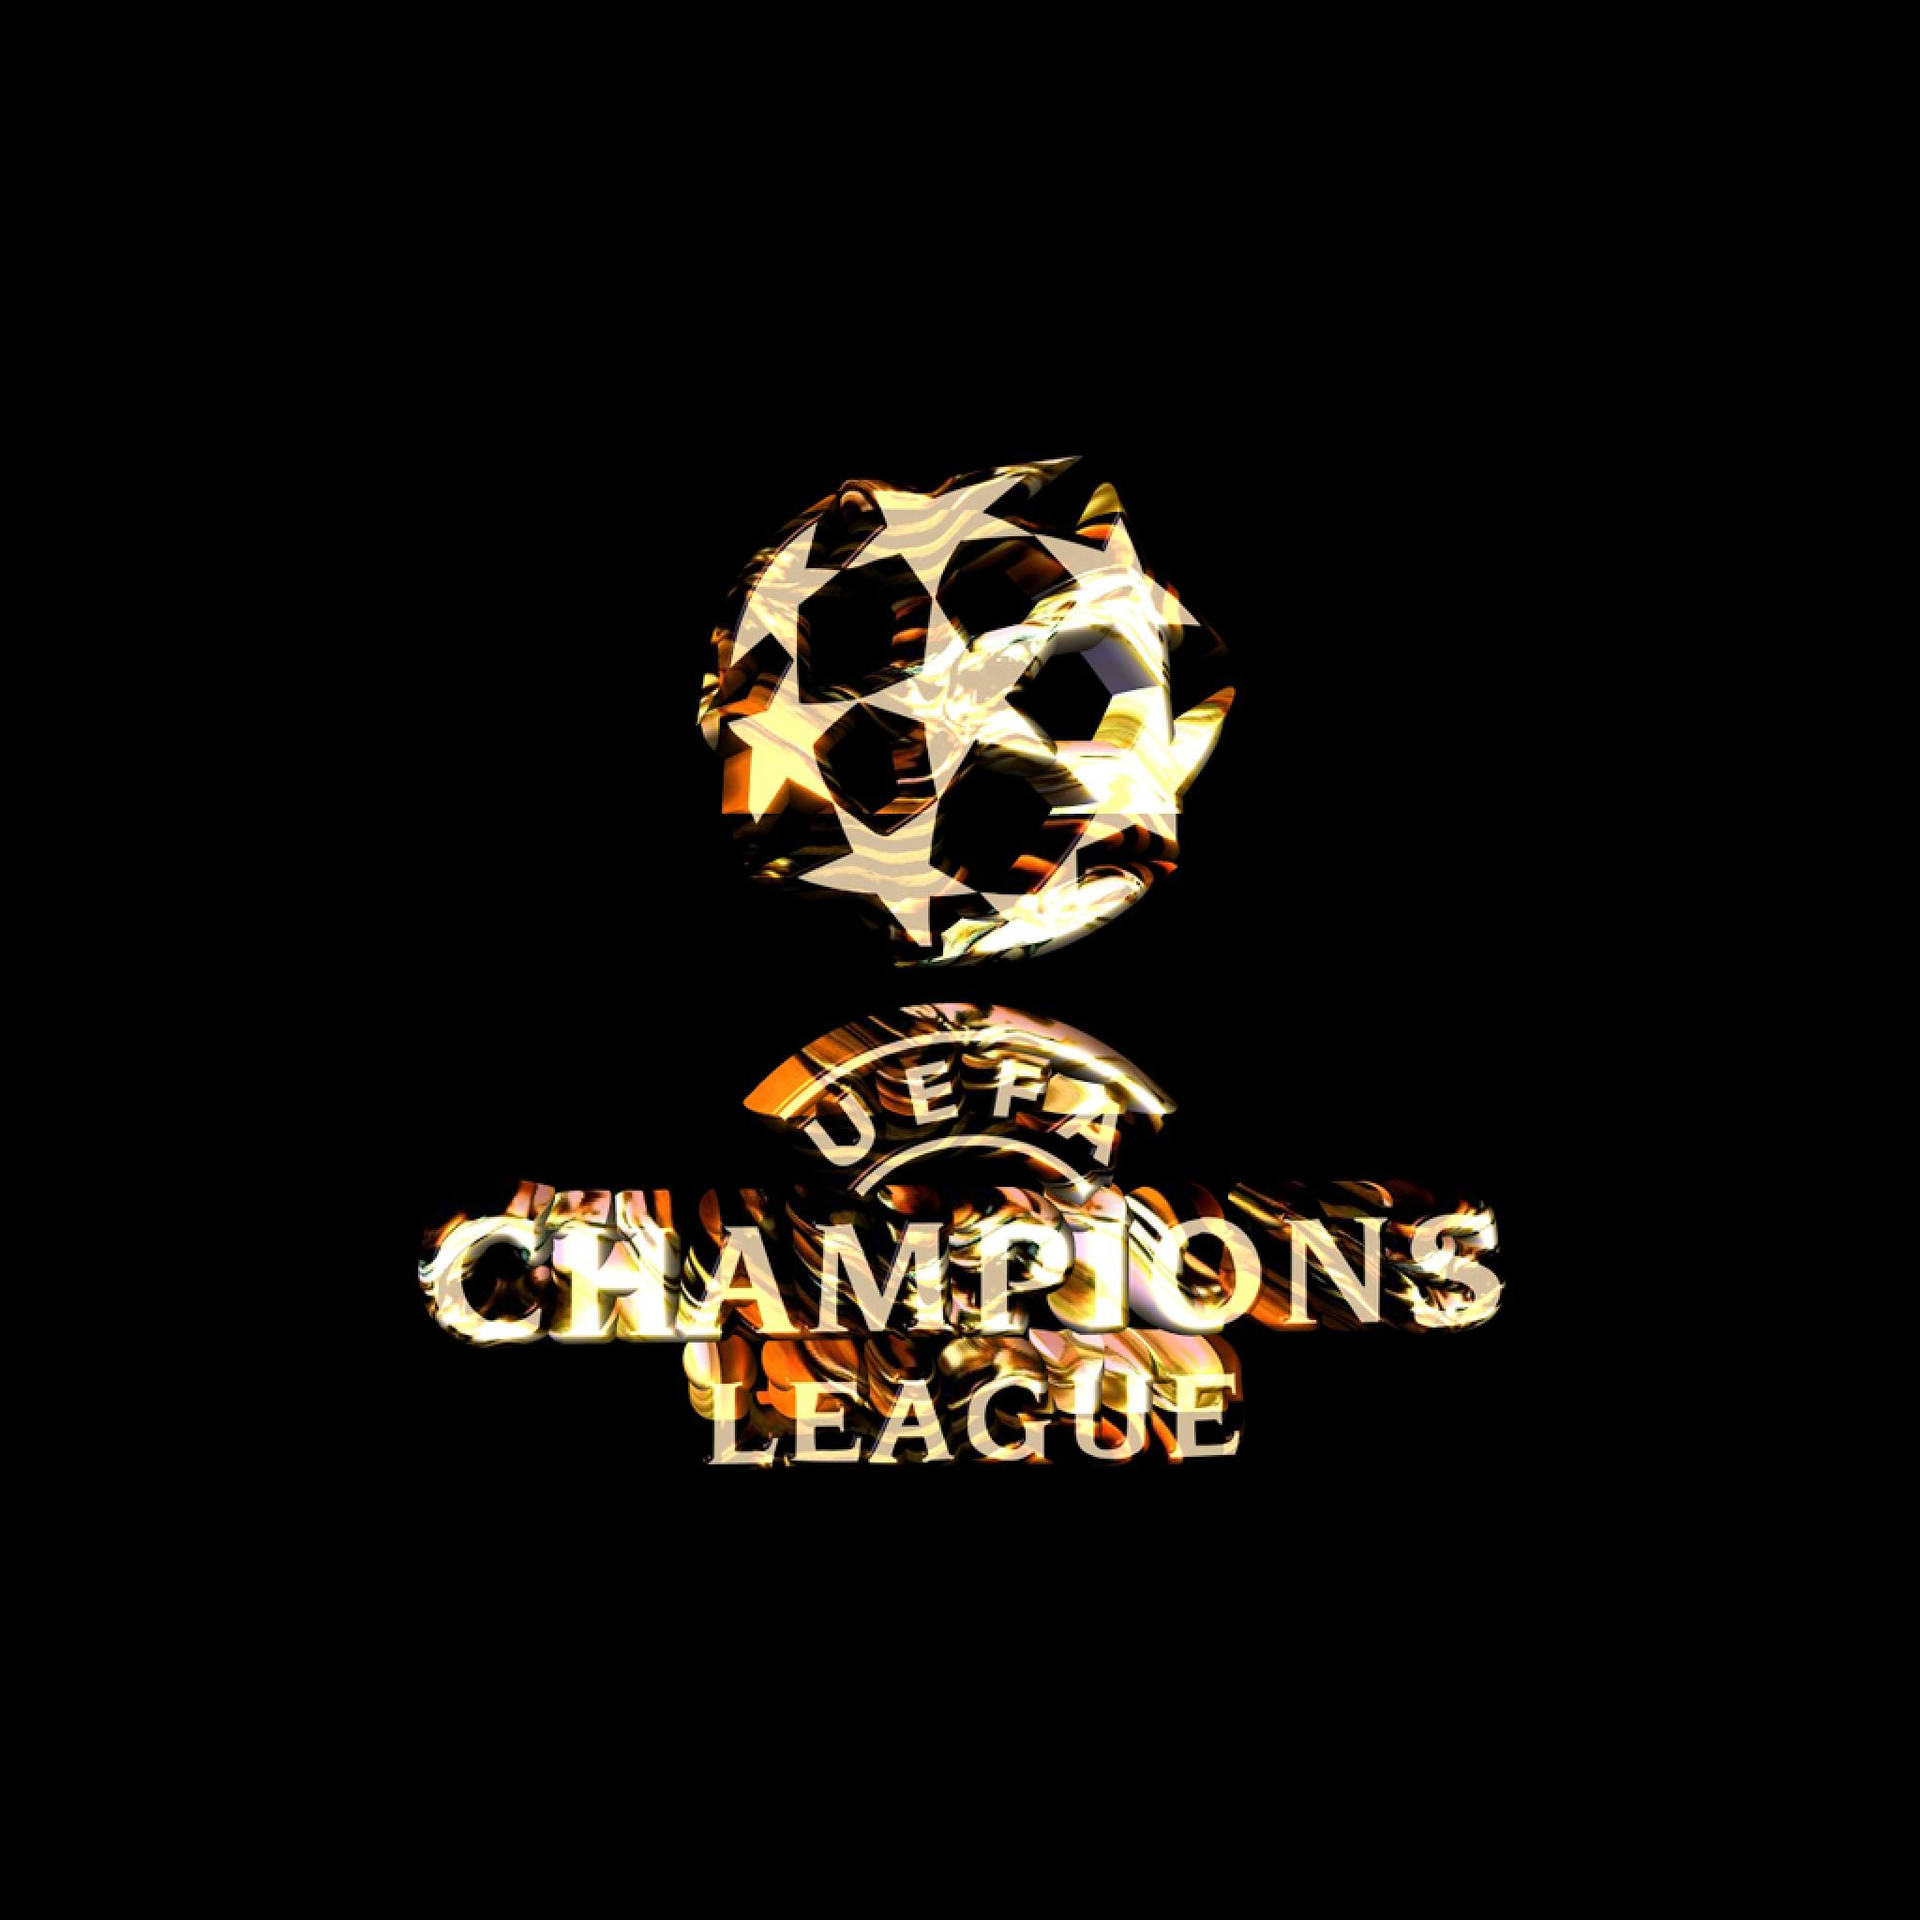 Logode Ouro Da Uefa Champions League. Papel de Parede